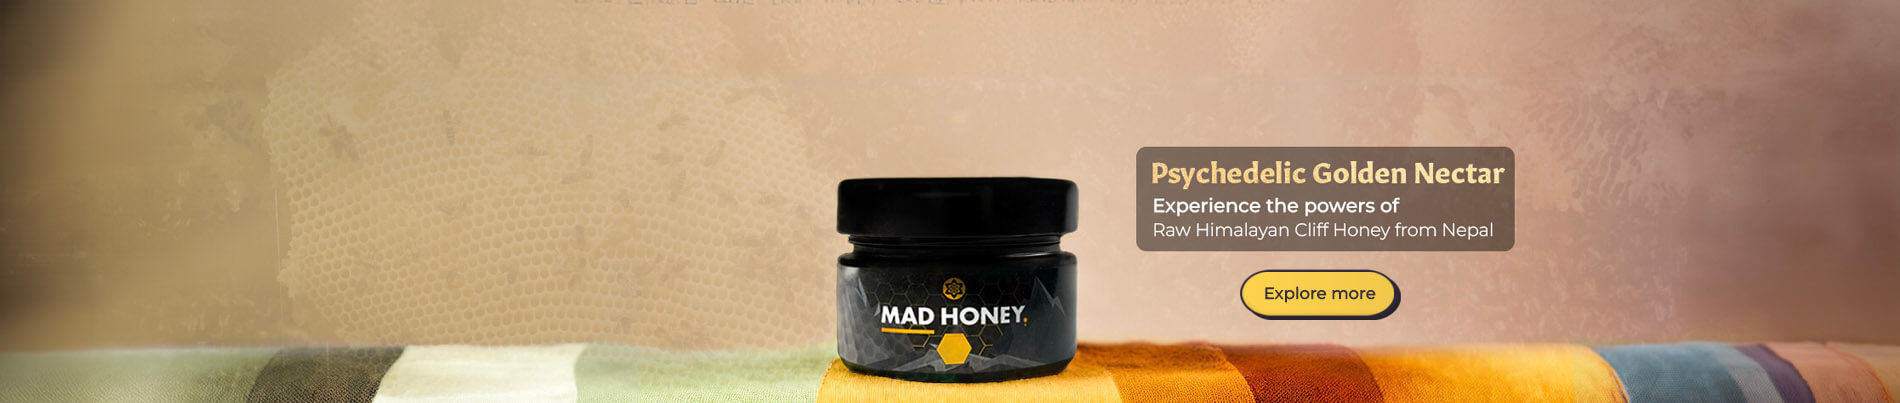 Descubra Mad Honey, el néctar dorado y psicodélico de Nepal